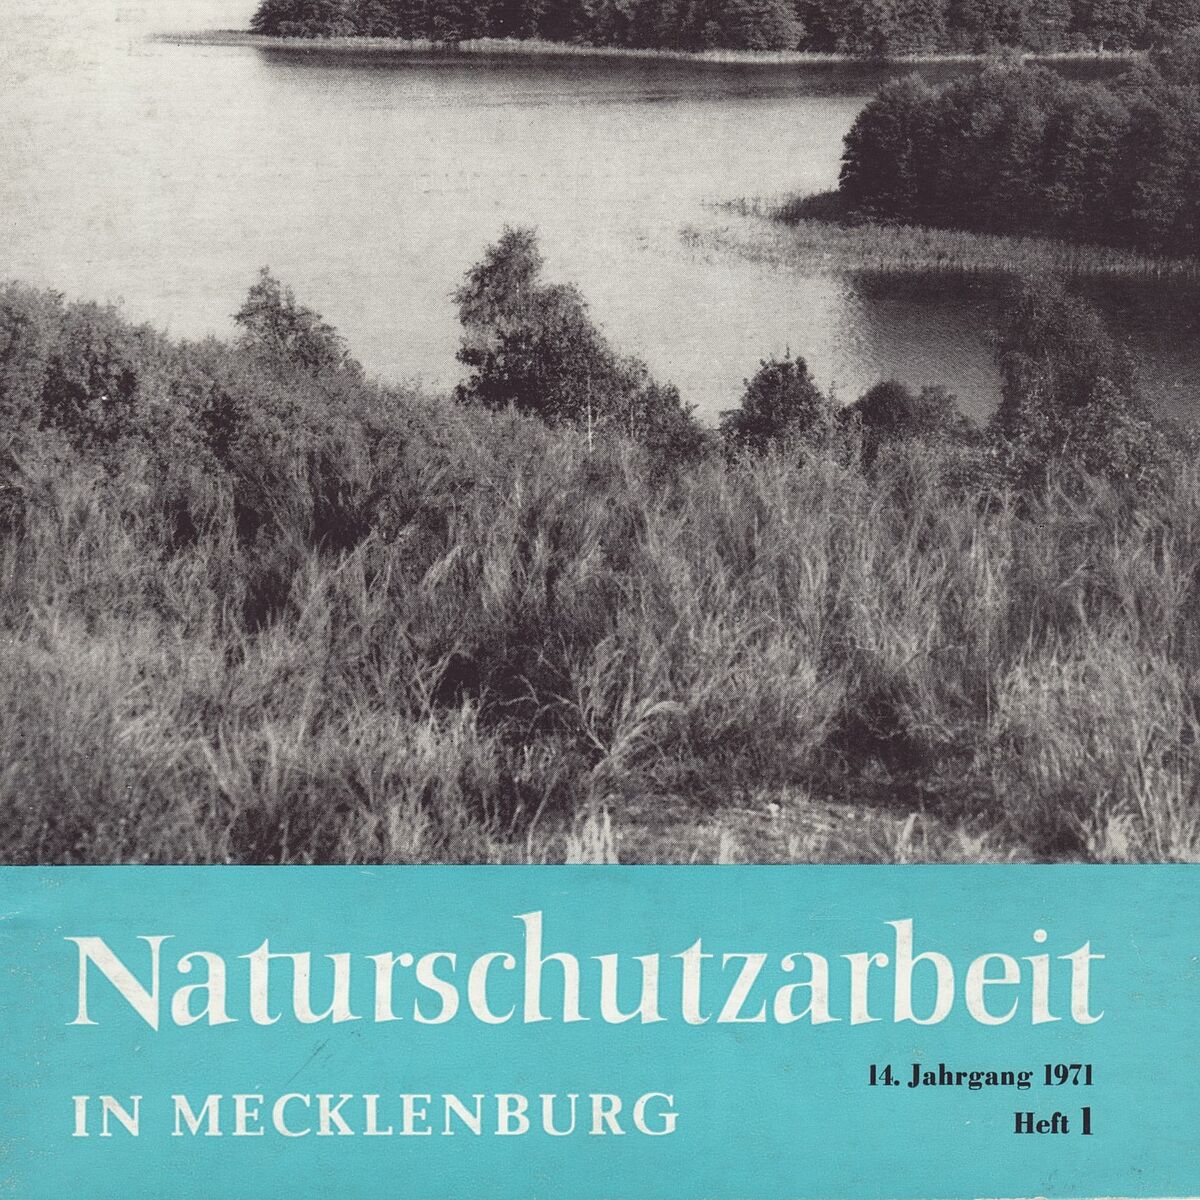 Naturschutzarbeit in Mecklenburg